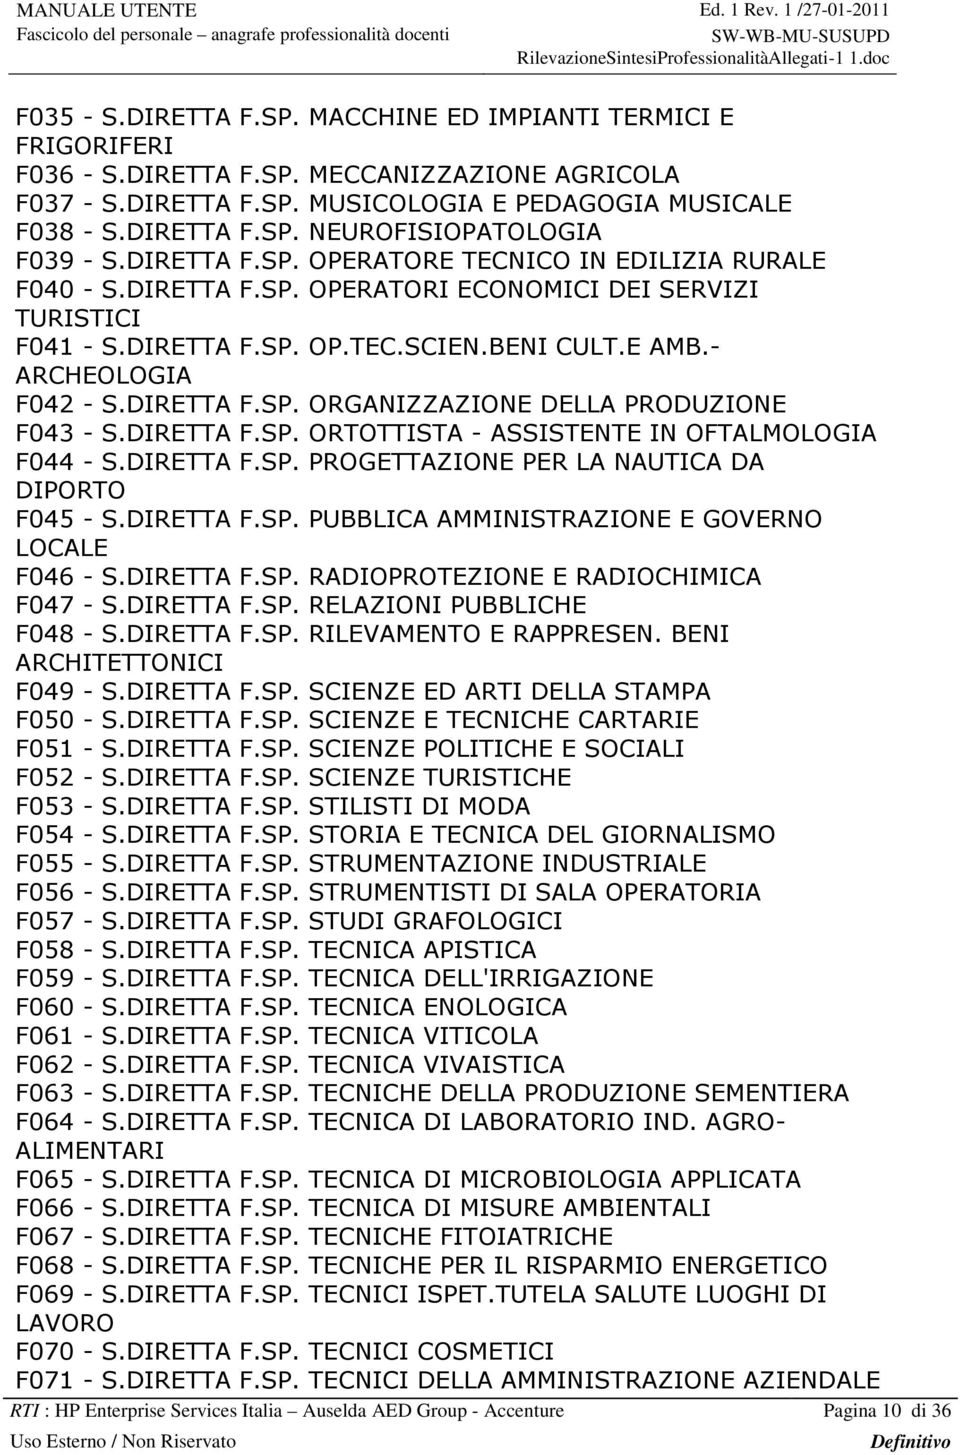 DIRETTA F.SP. ORGANIZZAZIONE DELLA PRODUZIONE F043 - S.DIRETTA F.SP. ORTOTTISTA - ASSISTENTE IN OFTALMOLOGIA F044 - S.DIRETTA F.SP. PROGETTAZIONE PER LA NAUTICA DA DIPORTO F045 - S.DIRETTA F.SP. PUBBLICA AMMINISTRAZIONE E GOVERNO LOCALE F046 - S.